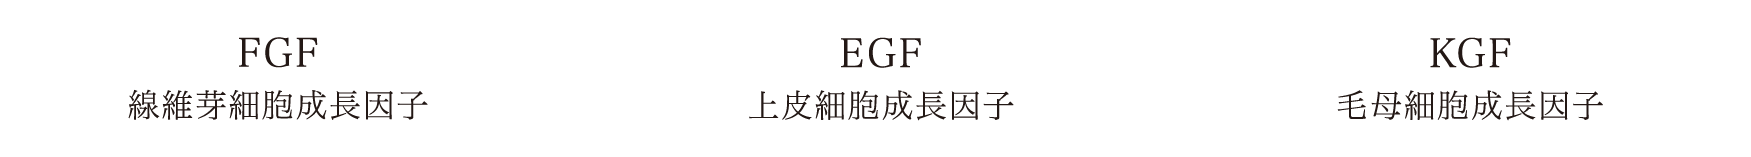 FGF線維芽細胞成長因子,EGF上皮細胞成長因子,KGF毛母細胞成長因子